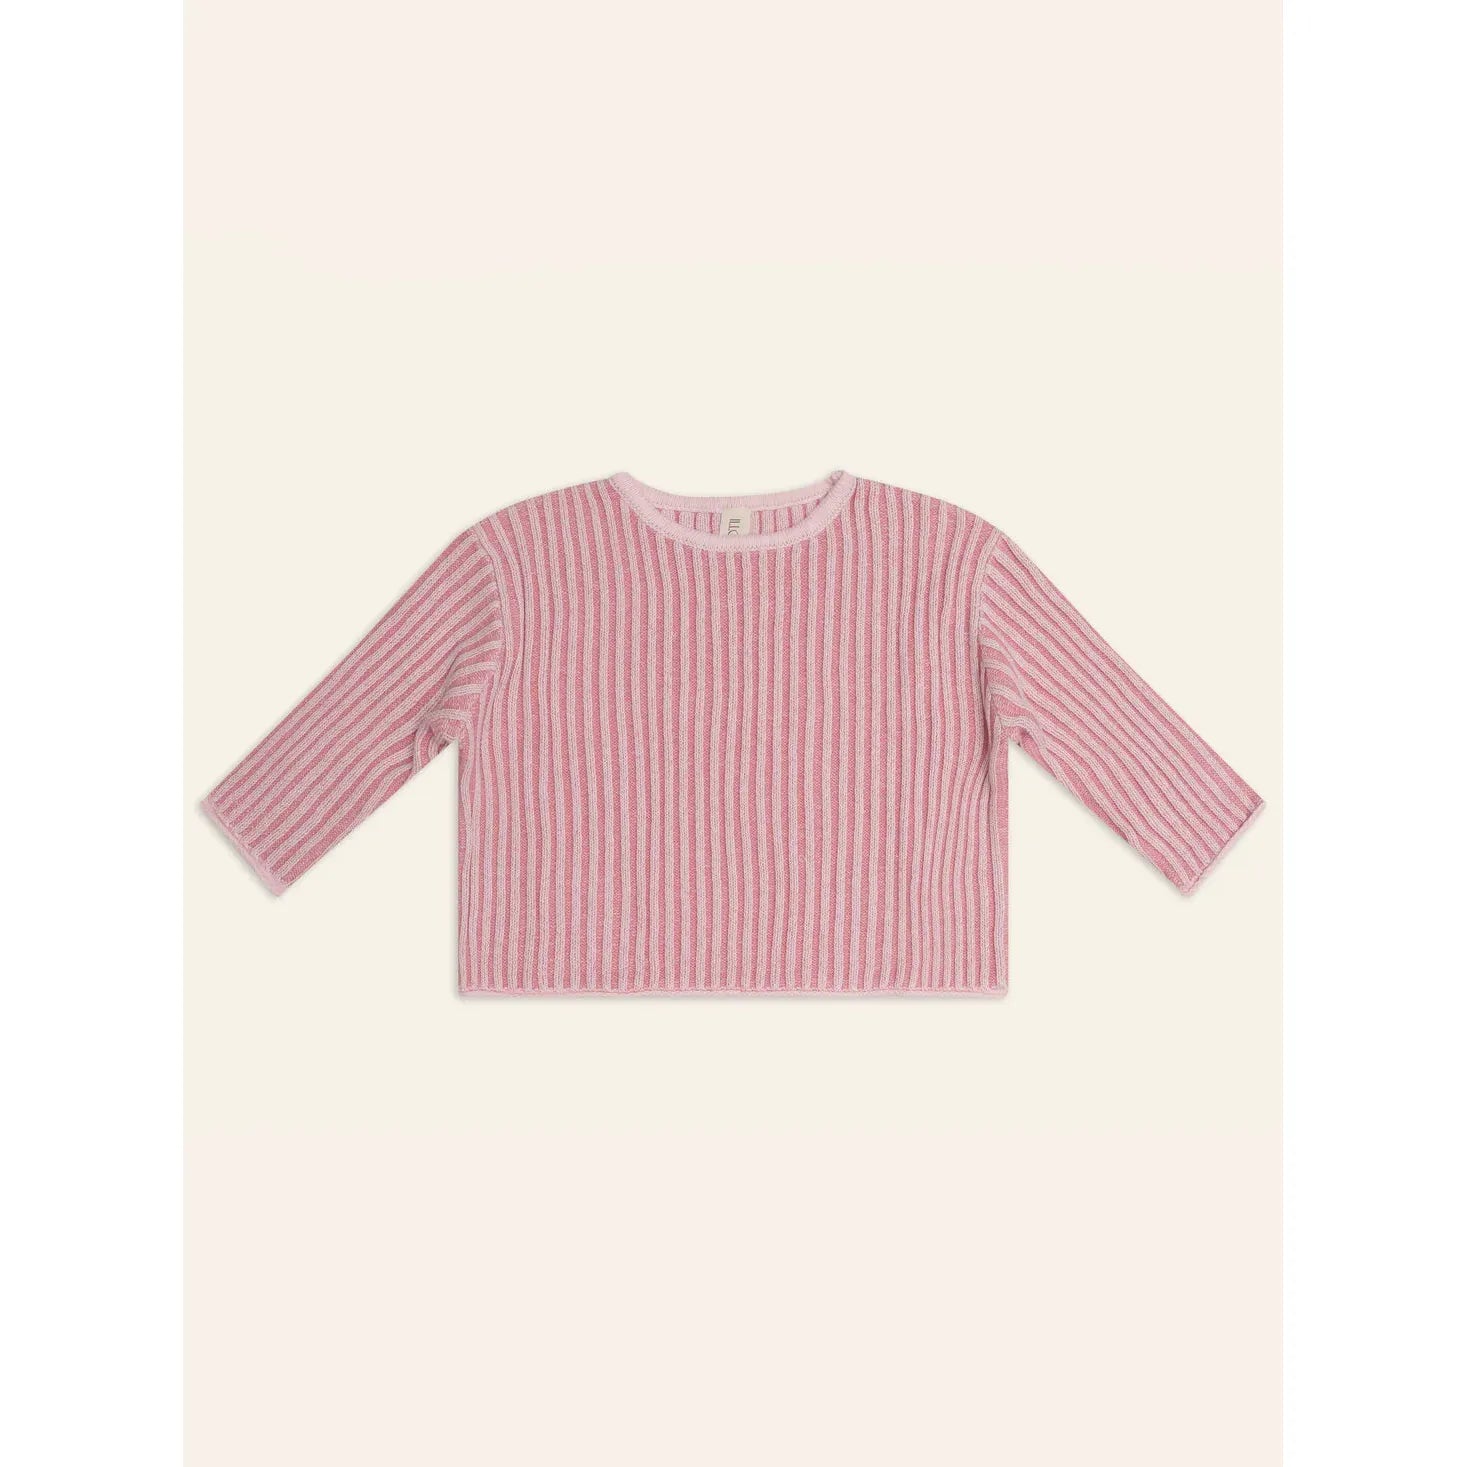 Illoura The Label Essential Knit Jumper - Strawberry Stripe